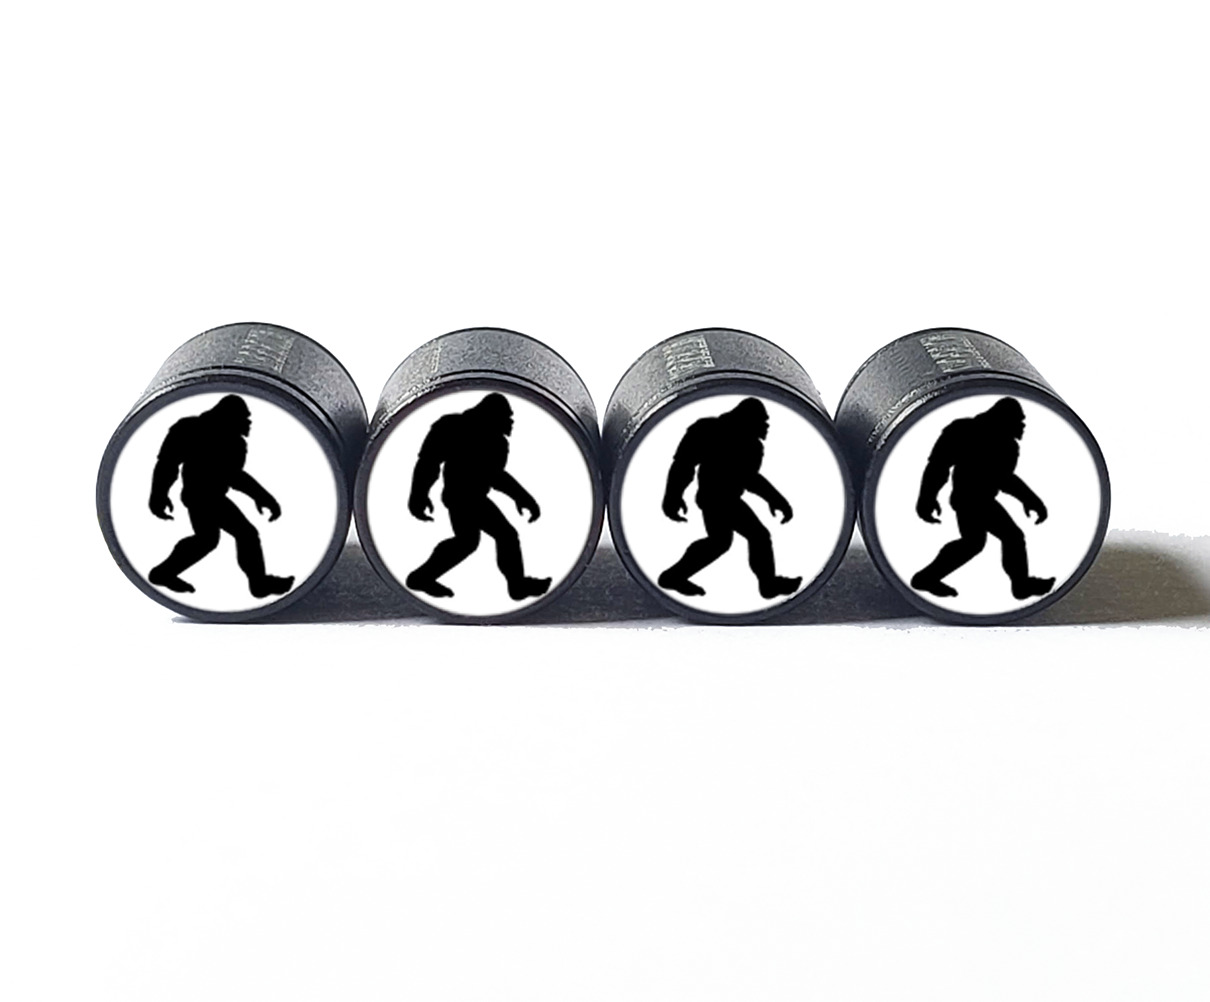 Bigfoot Sasquatch Silhouette Tire Valve Caps - Black Aluminum - Set of Four